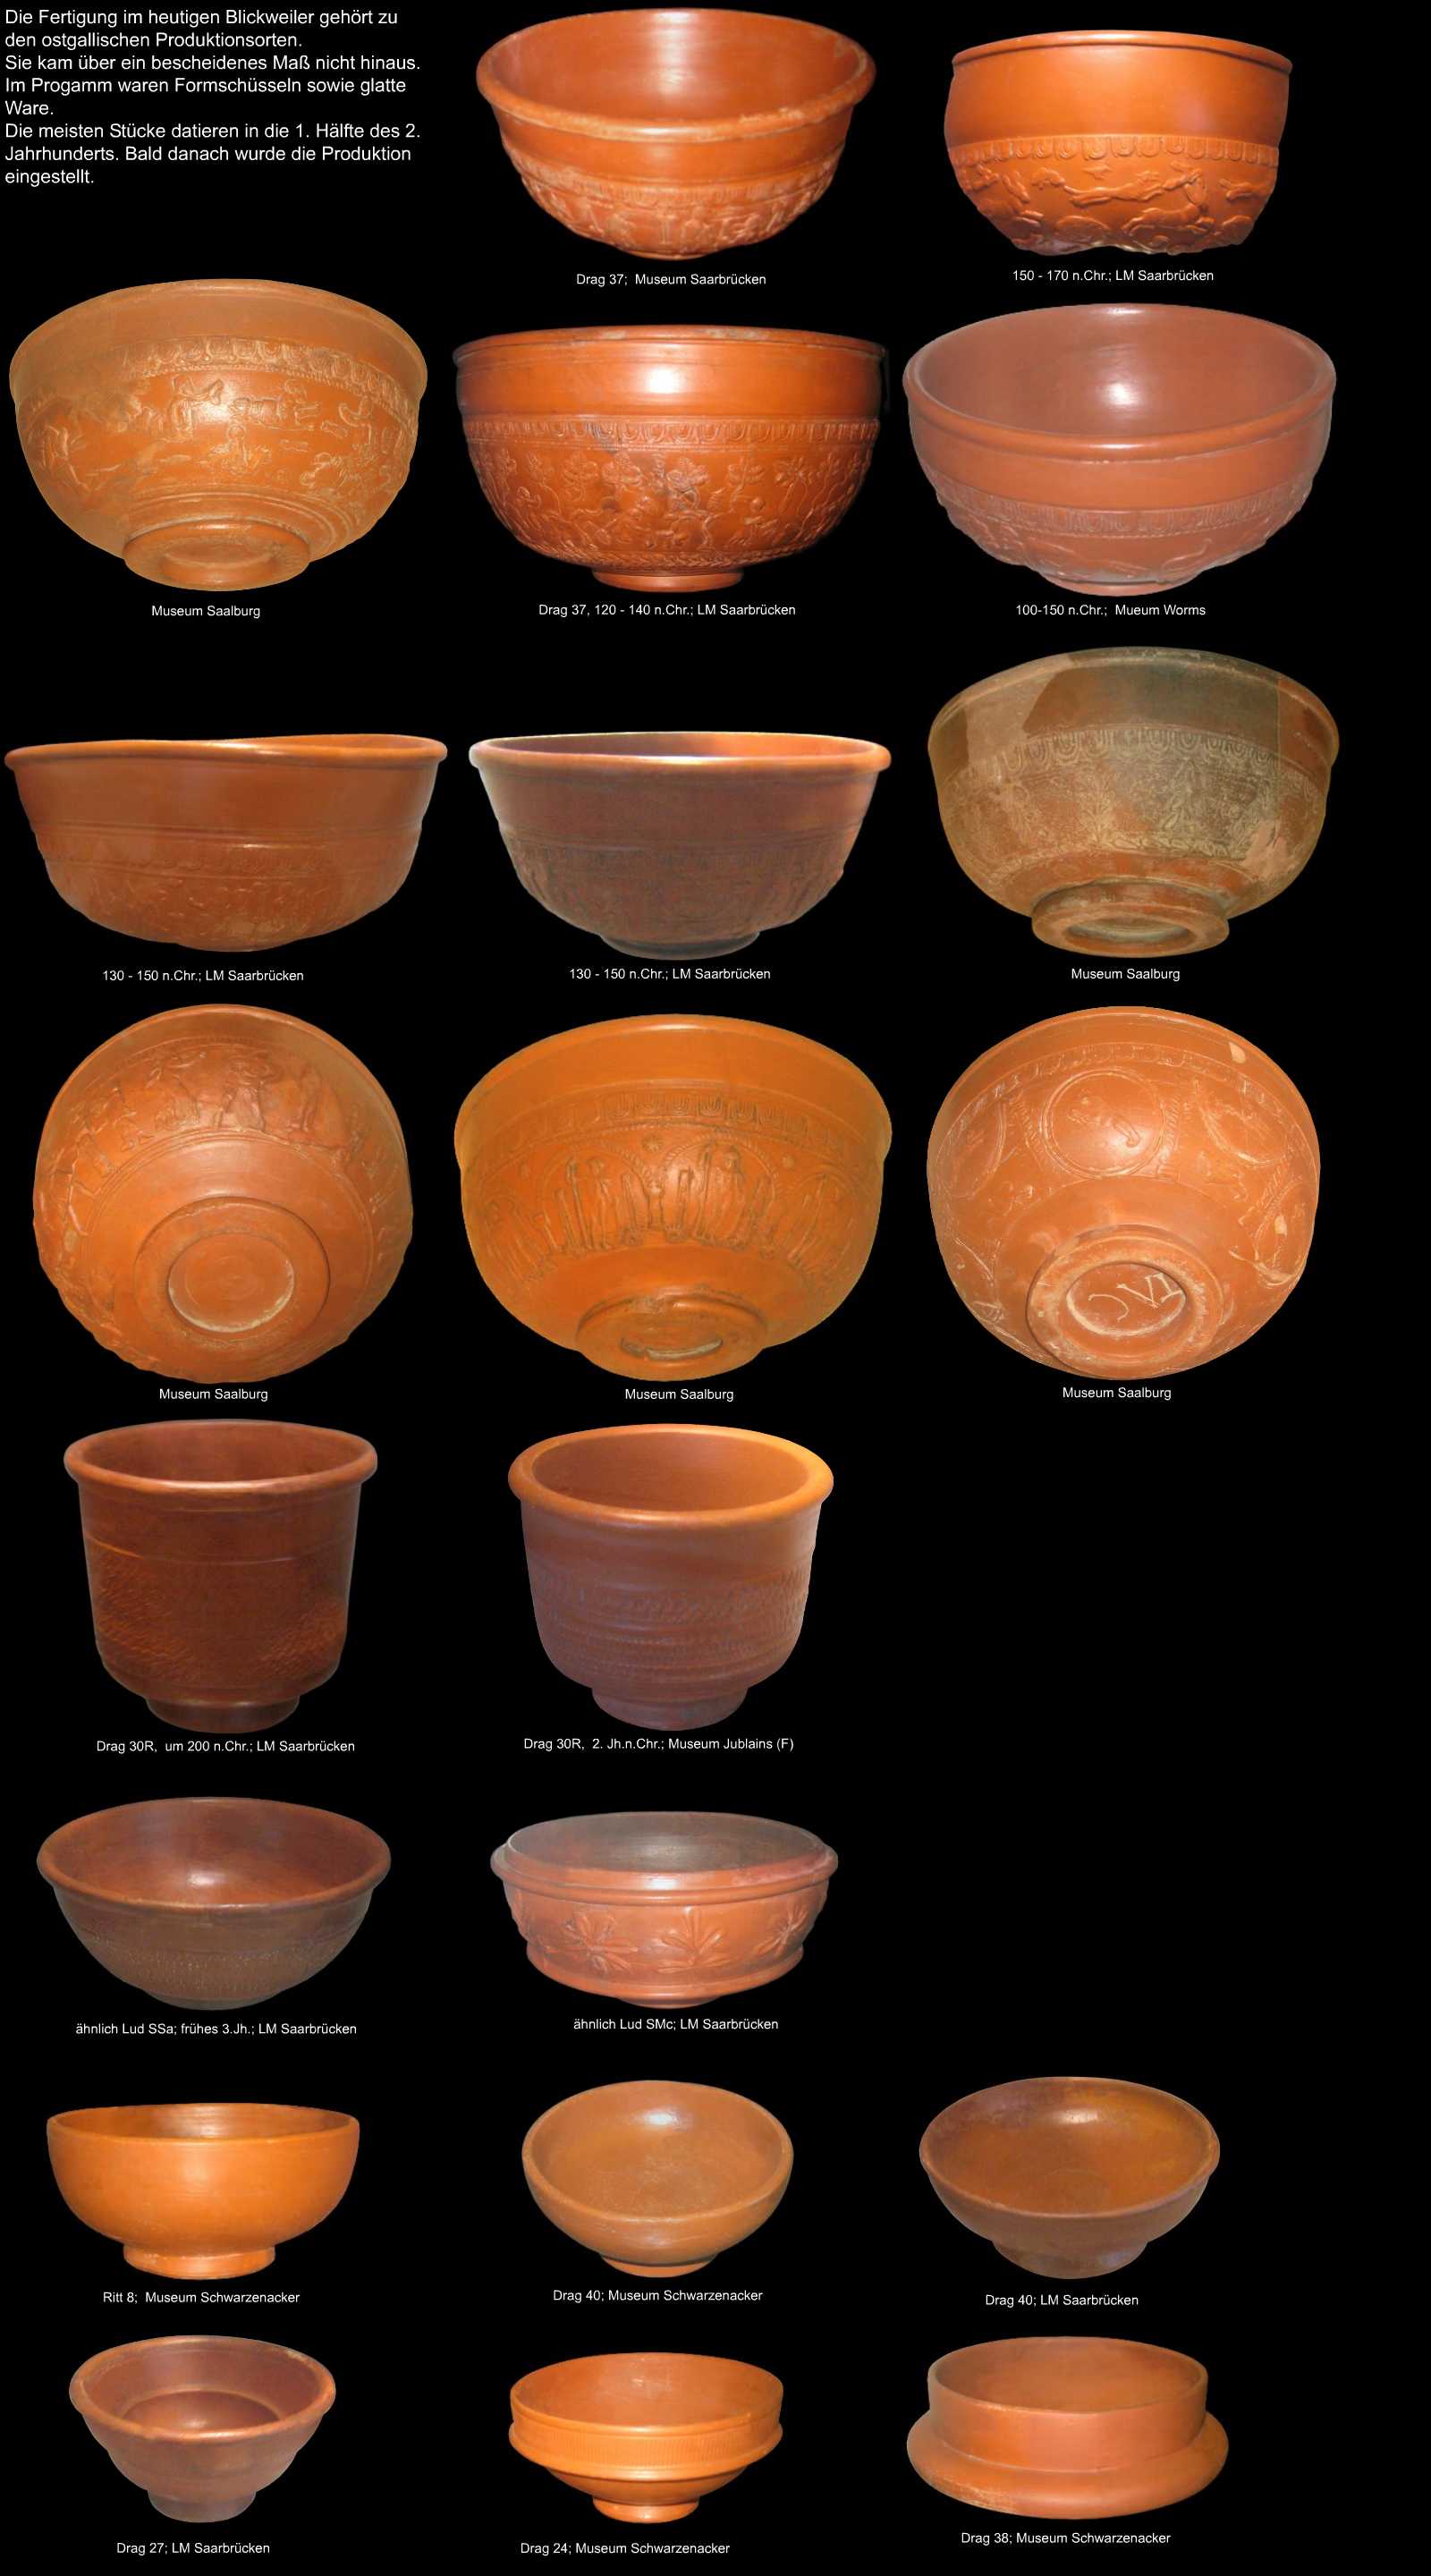 römische Keramik aus Blickweiler1